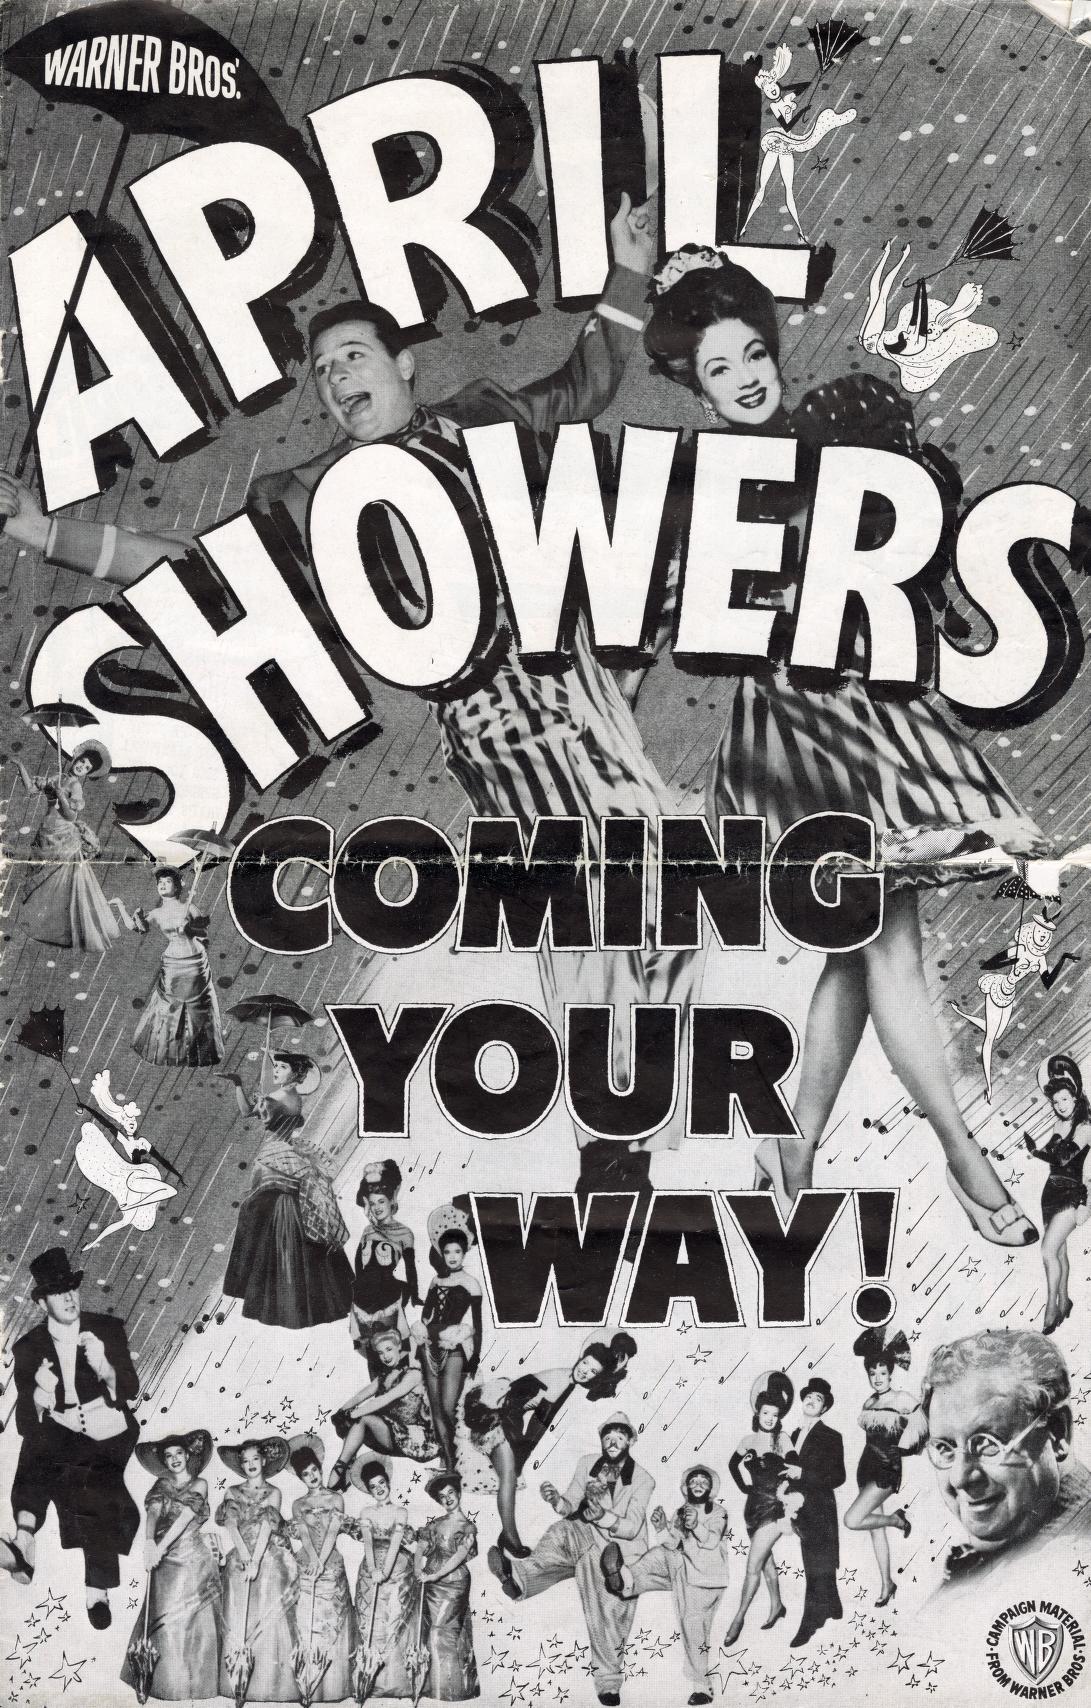 April Showers (Warner Bros.)